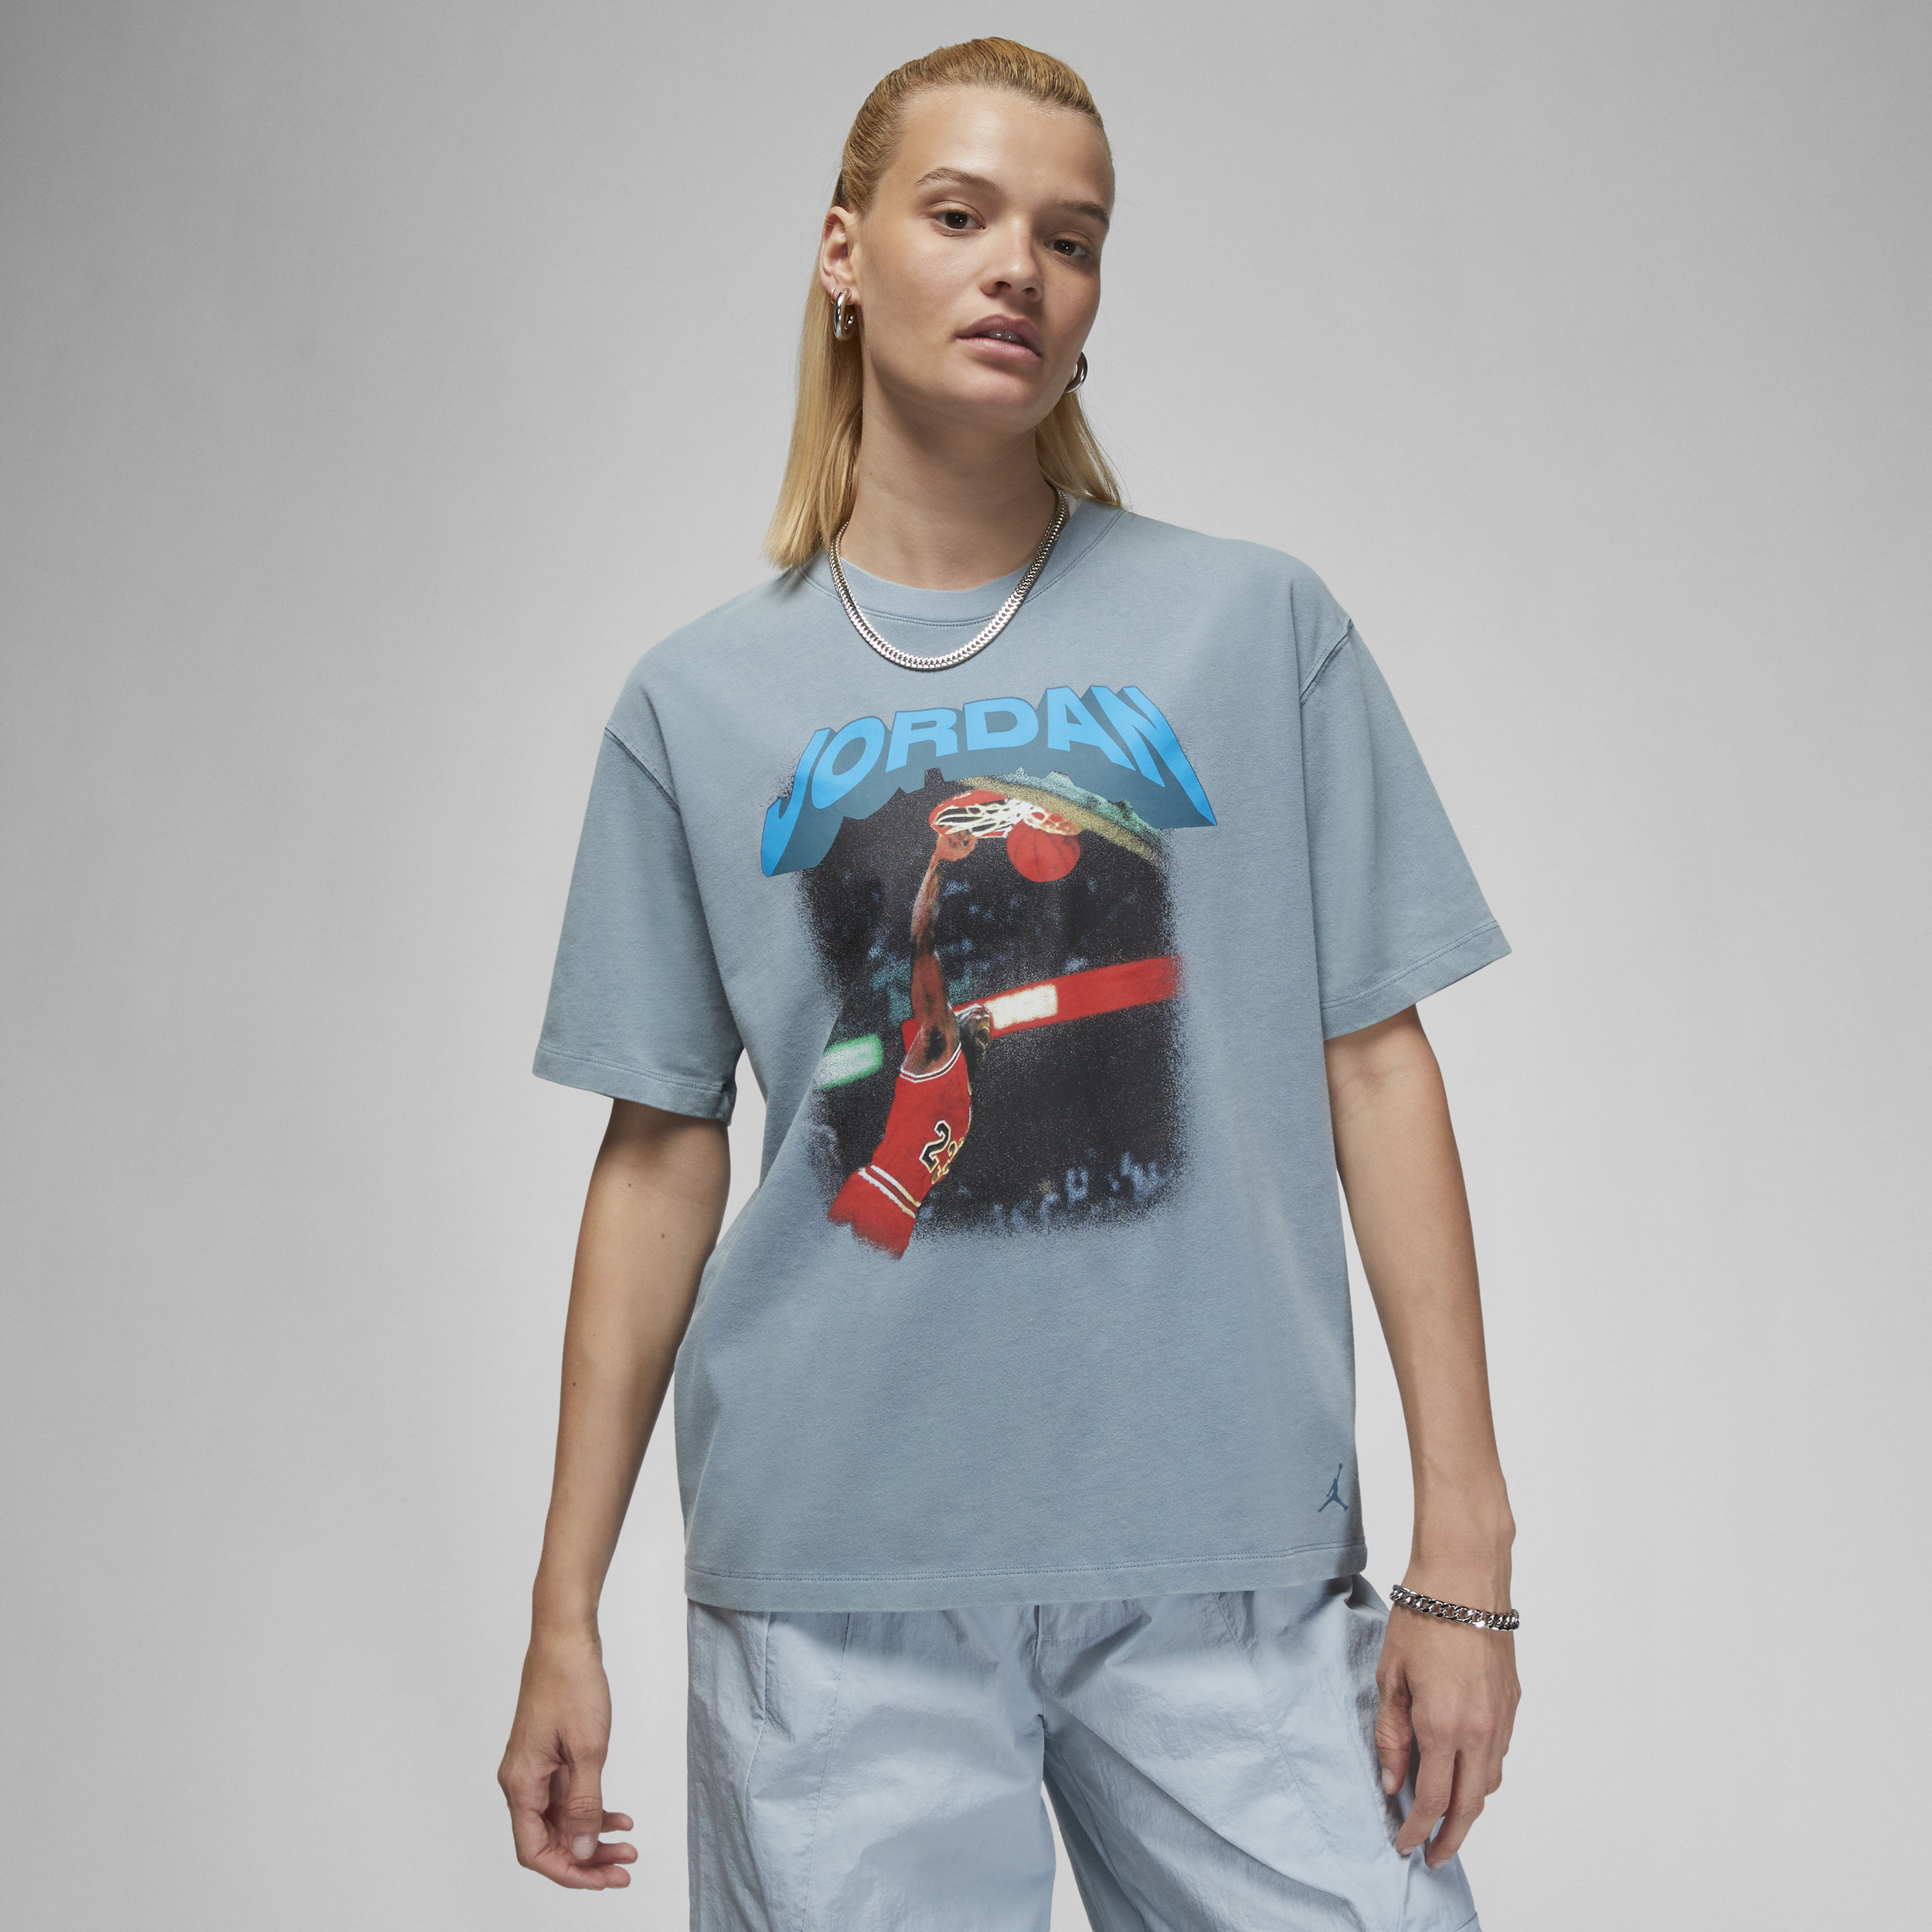 Jordan (Her)itage Camiseta con estampado - Mujer - Azul